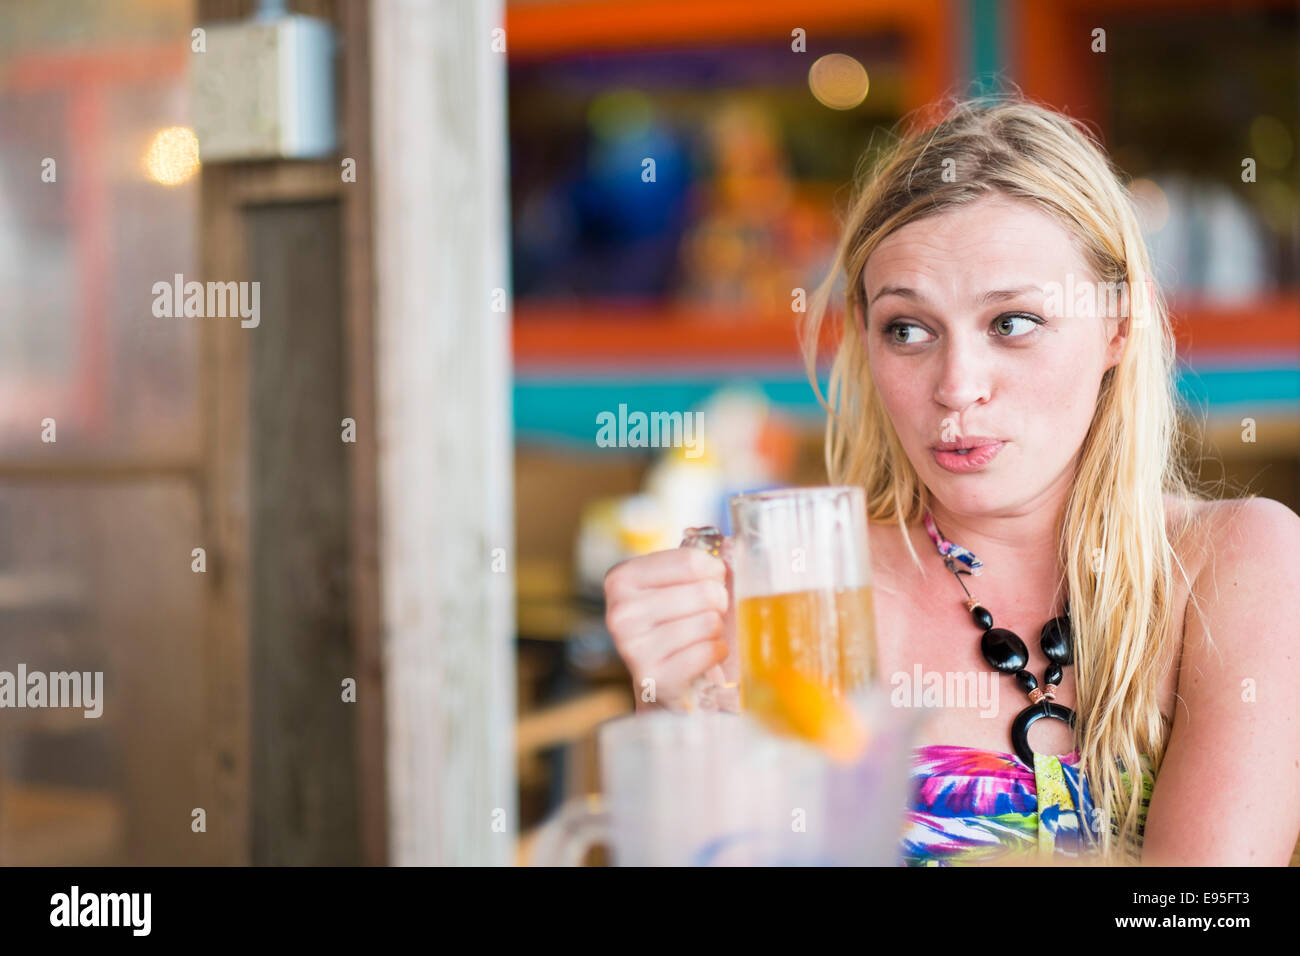 Junge Frau trinkt Bier in der Bar im freien Suche entfernt, was lustiges Gesicht Stockfoto